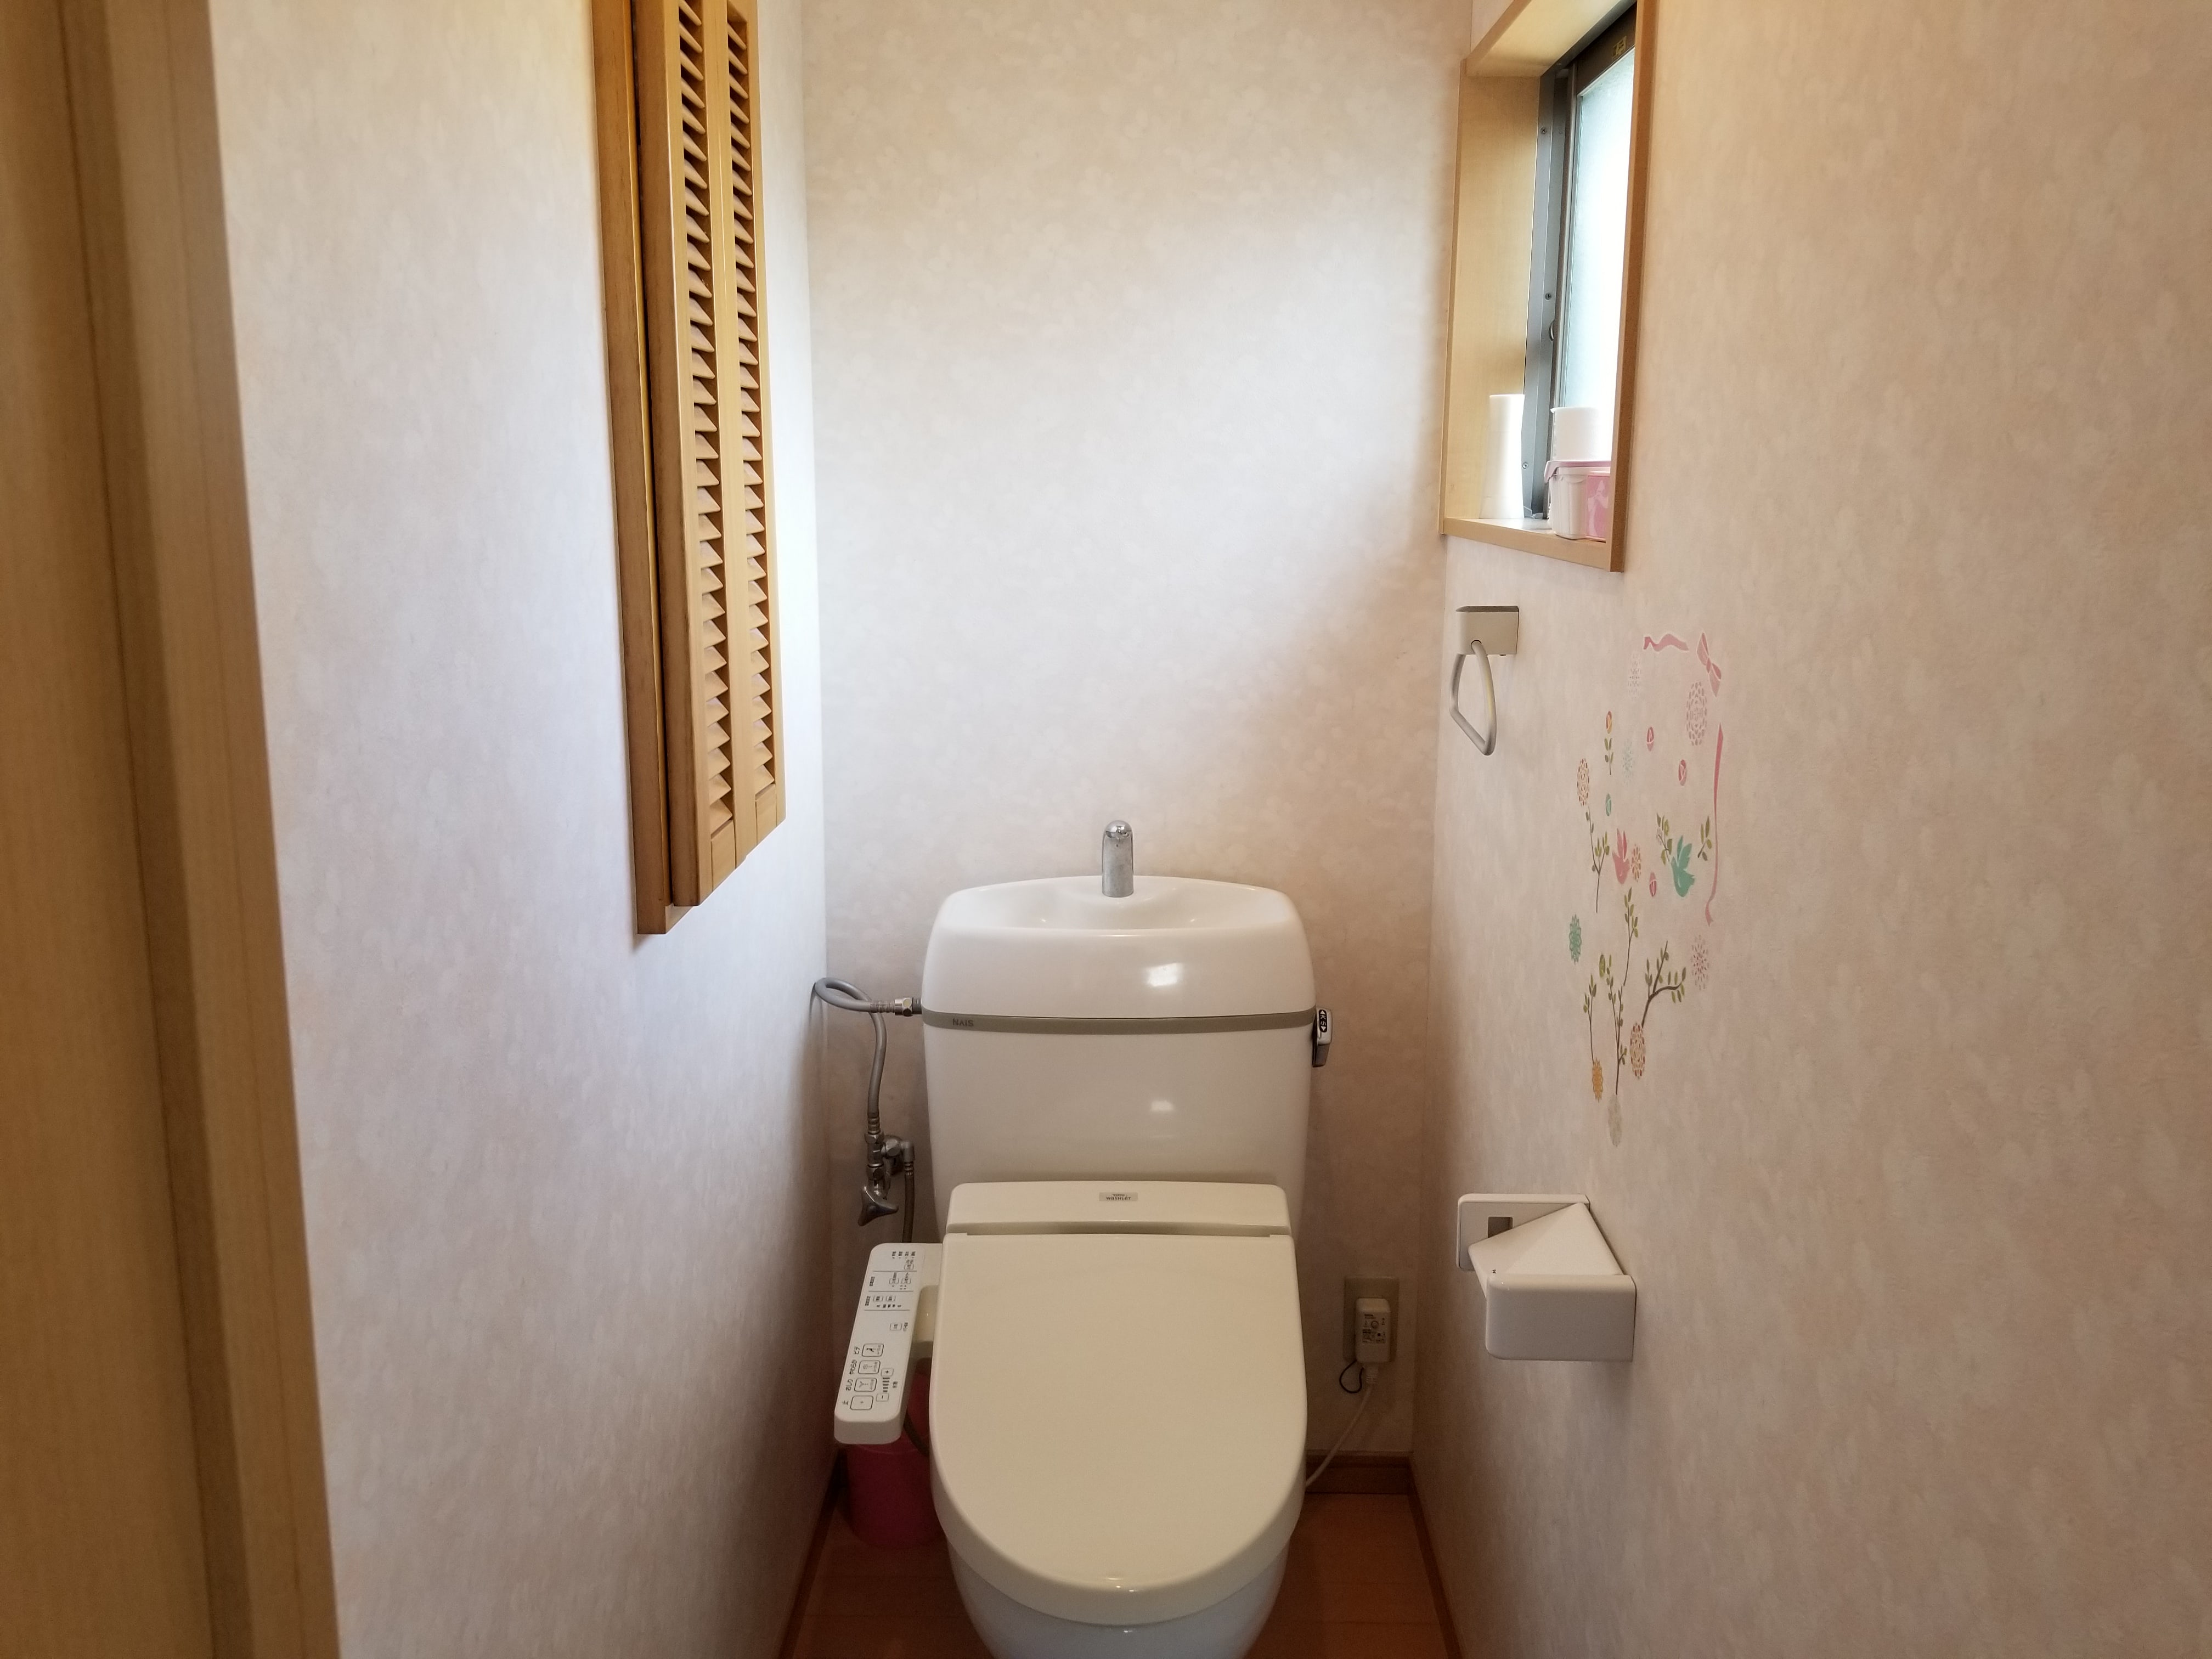 長崎市でトイレの壁紙 クロス 張替えリフォーム 長崎壁紙 クロス 張替え職人 壁紙クロス張替はお任せ下さい